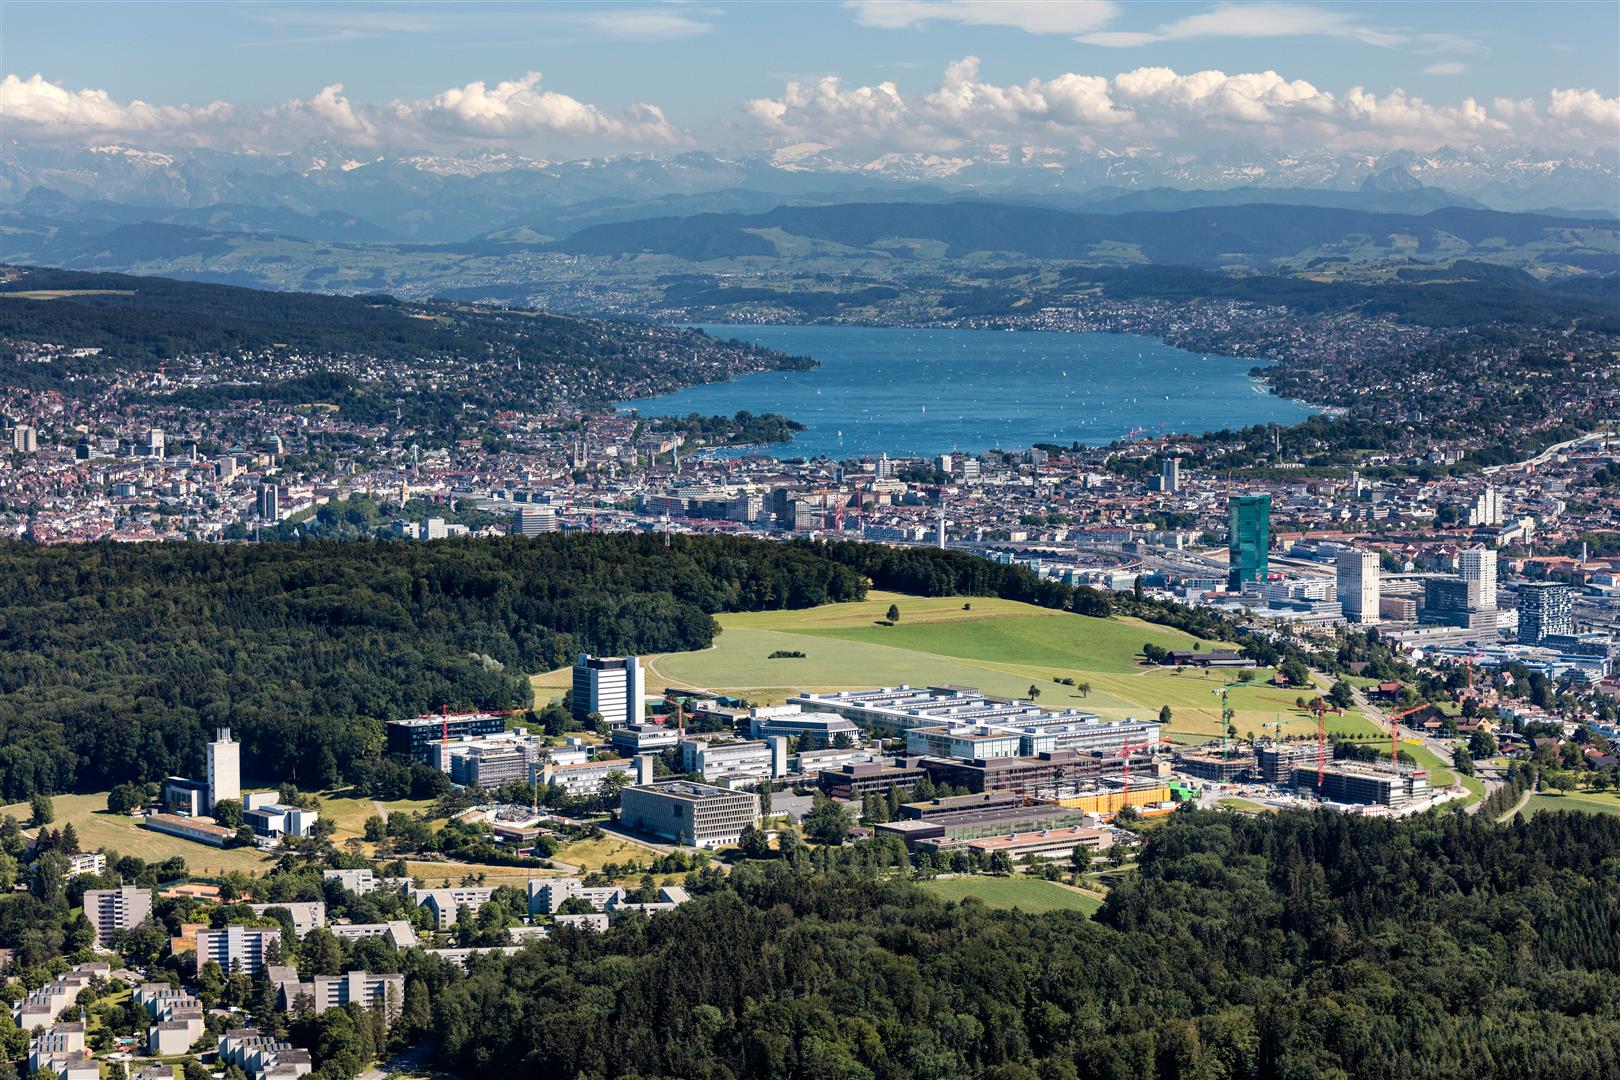 Un segundo campus está situado en las colinas de Hönggerberg en las afueras de Zúrich. © ETH Zurich/Marco Carocari